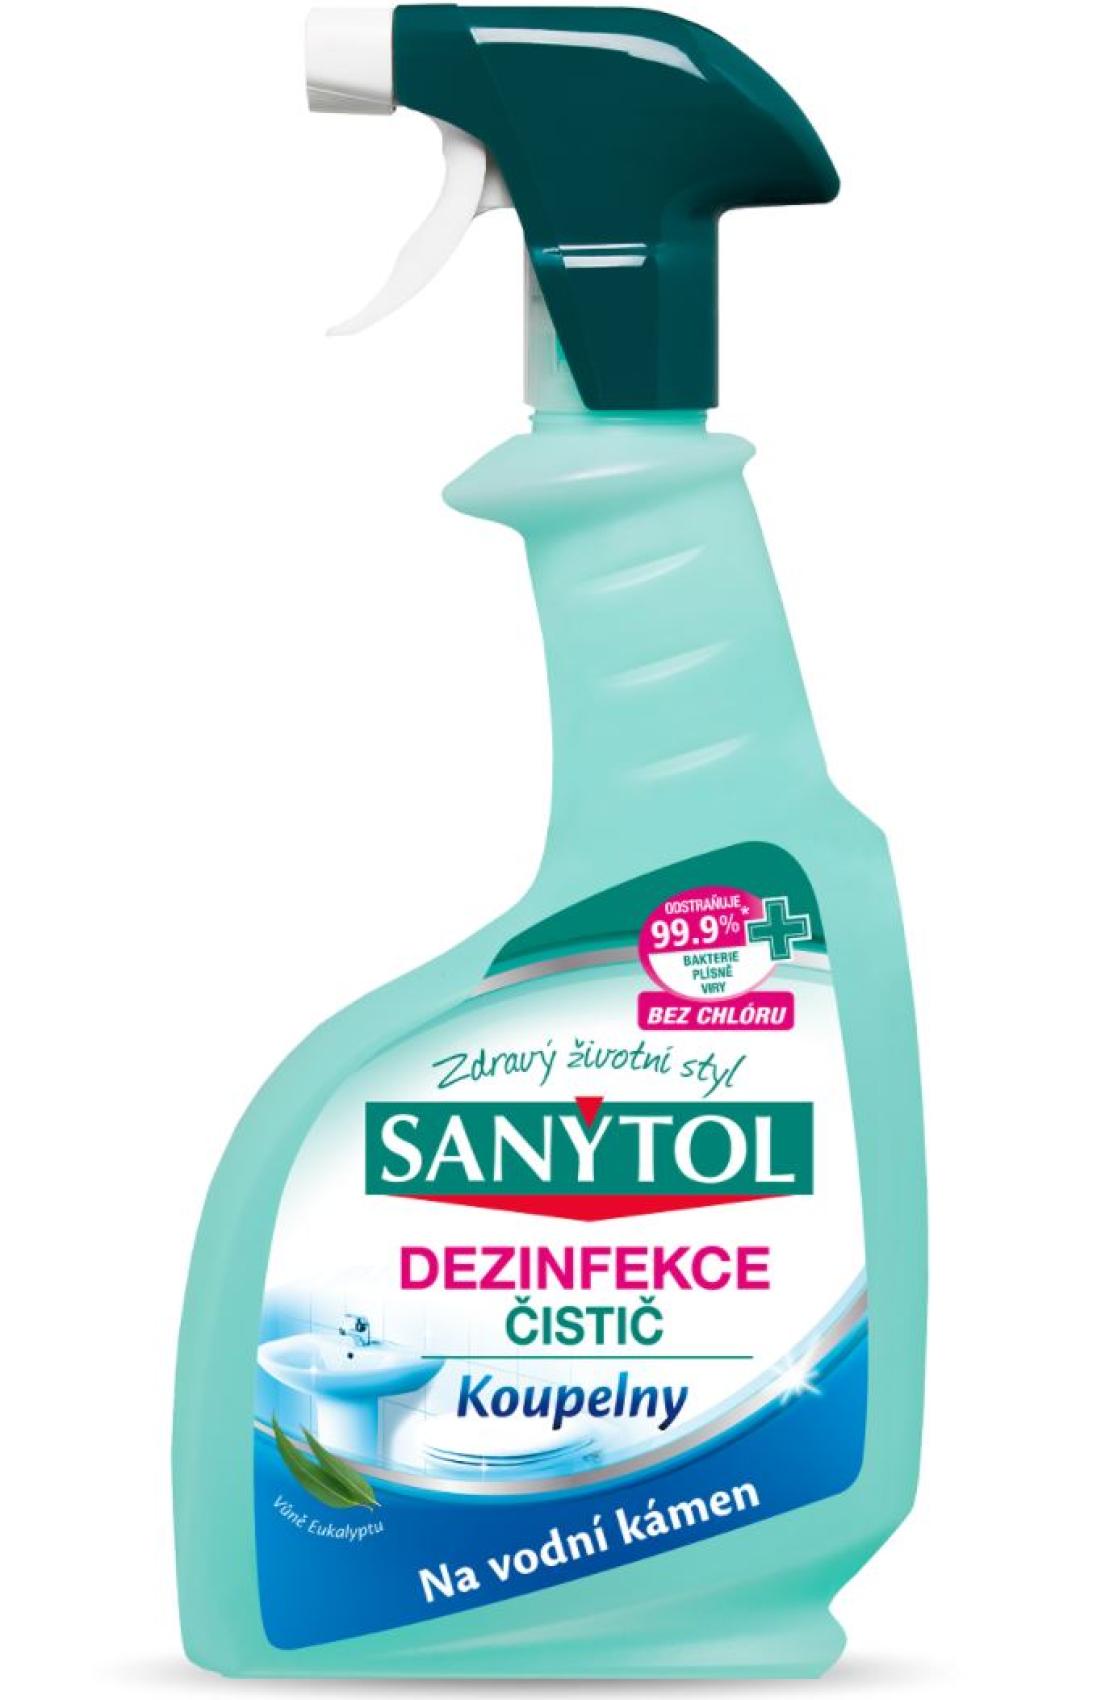 Sanytol dezinfekce na koupelny 500ml - Kliknutm na obrzek zavete